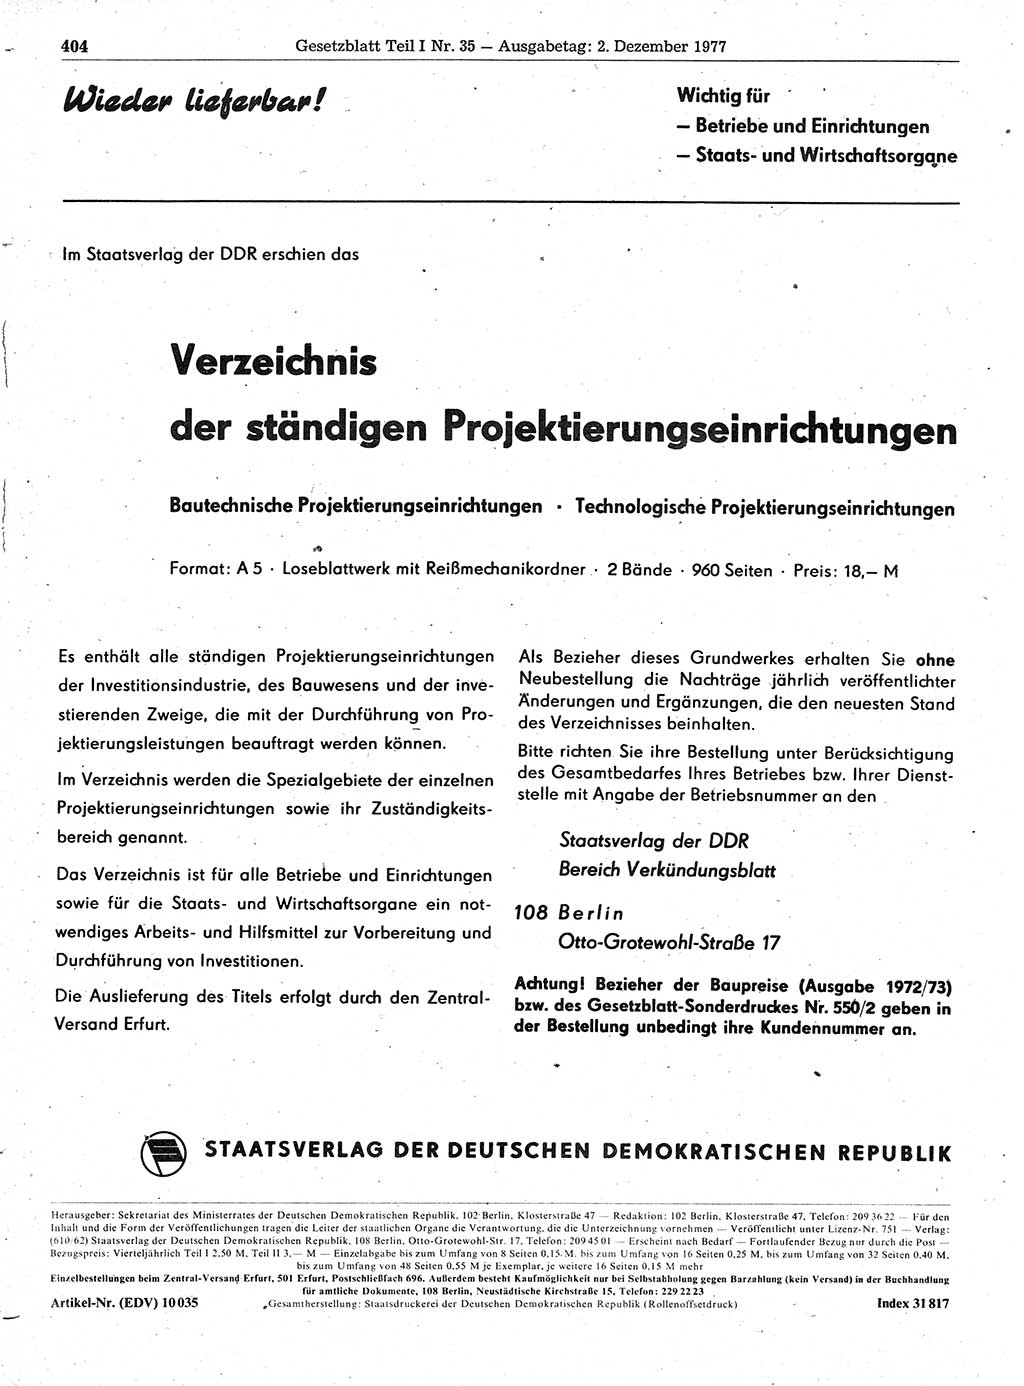 Gesetzblatt (GBl.) der Deutschen Demokratischen Republik (DDR) Teil Ⅰ 1977, Seite 404 (GBl. DDR Ⅰ 1977, S. 404)